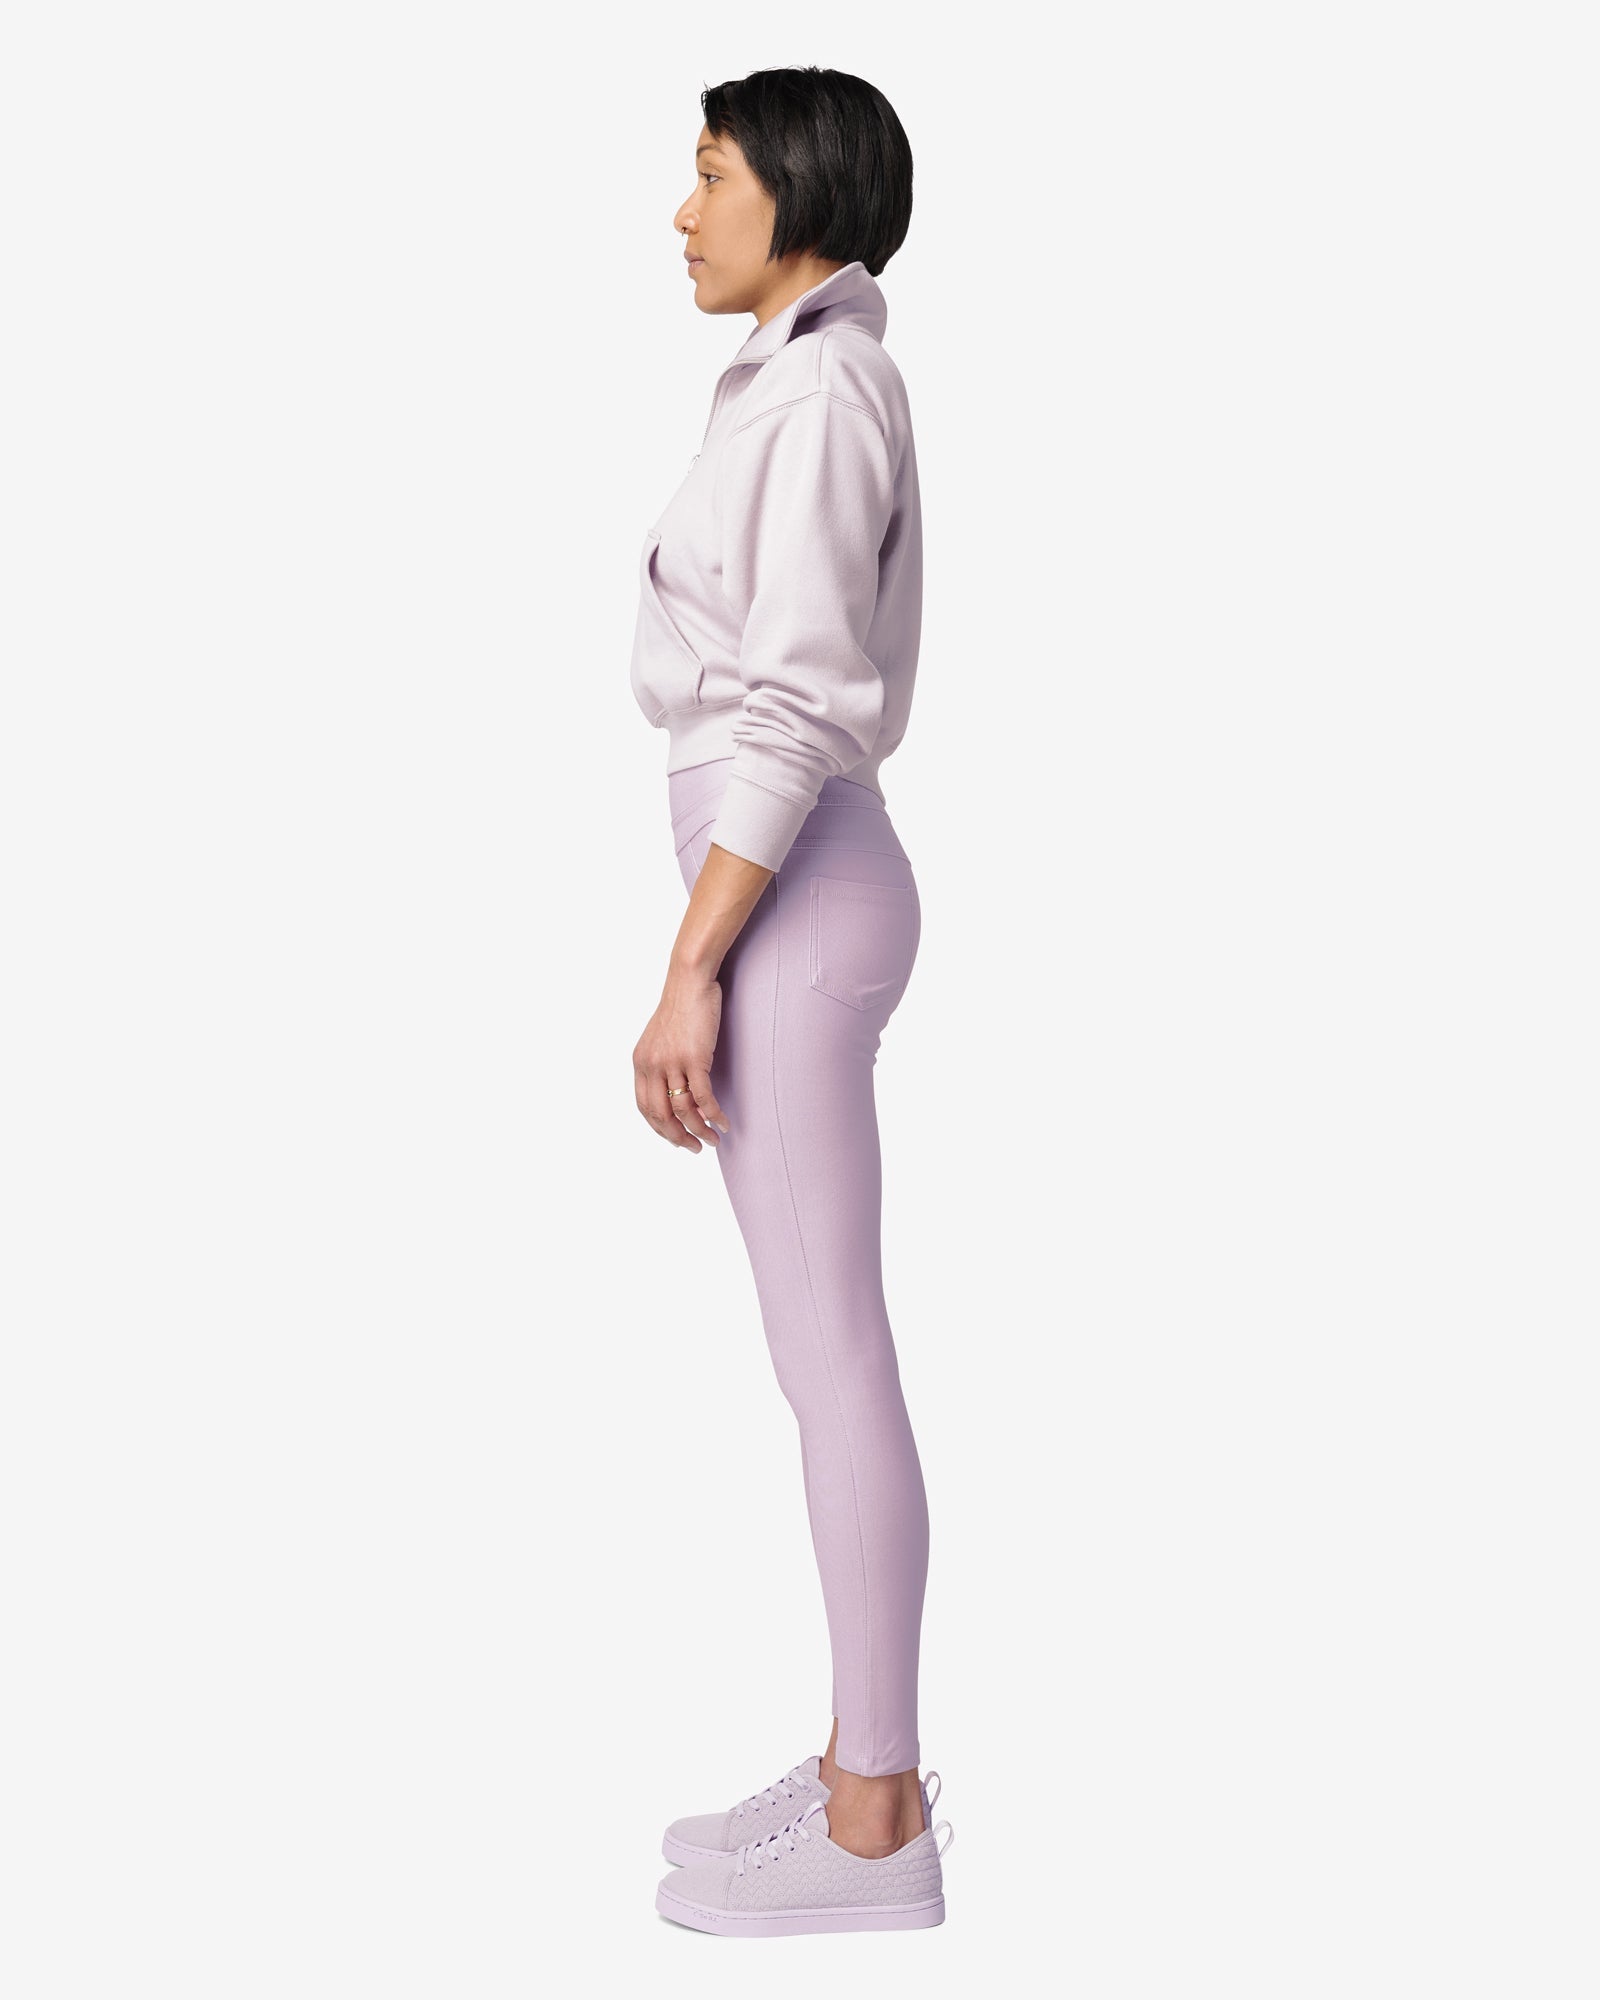 https://soillholds.com/cdn/shop/products/flex-leggings-lavender-so-ill-x-meagan-martin-so-ill-xs-so-ill-644593_2048x.jpg?v=1677258121